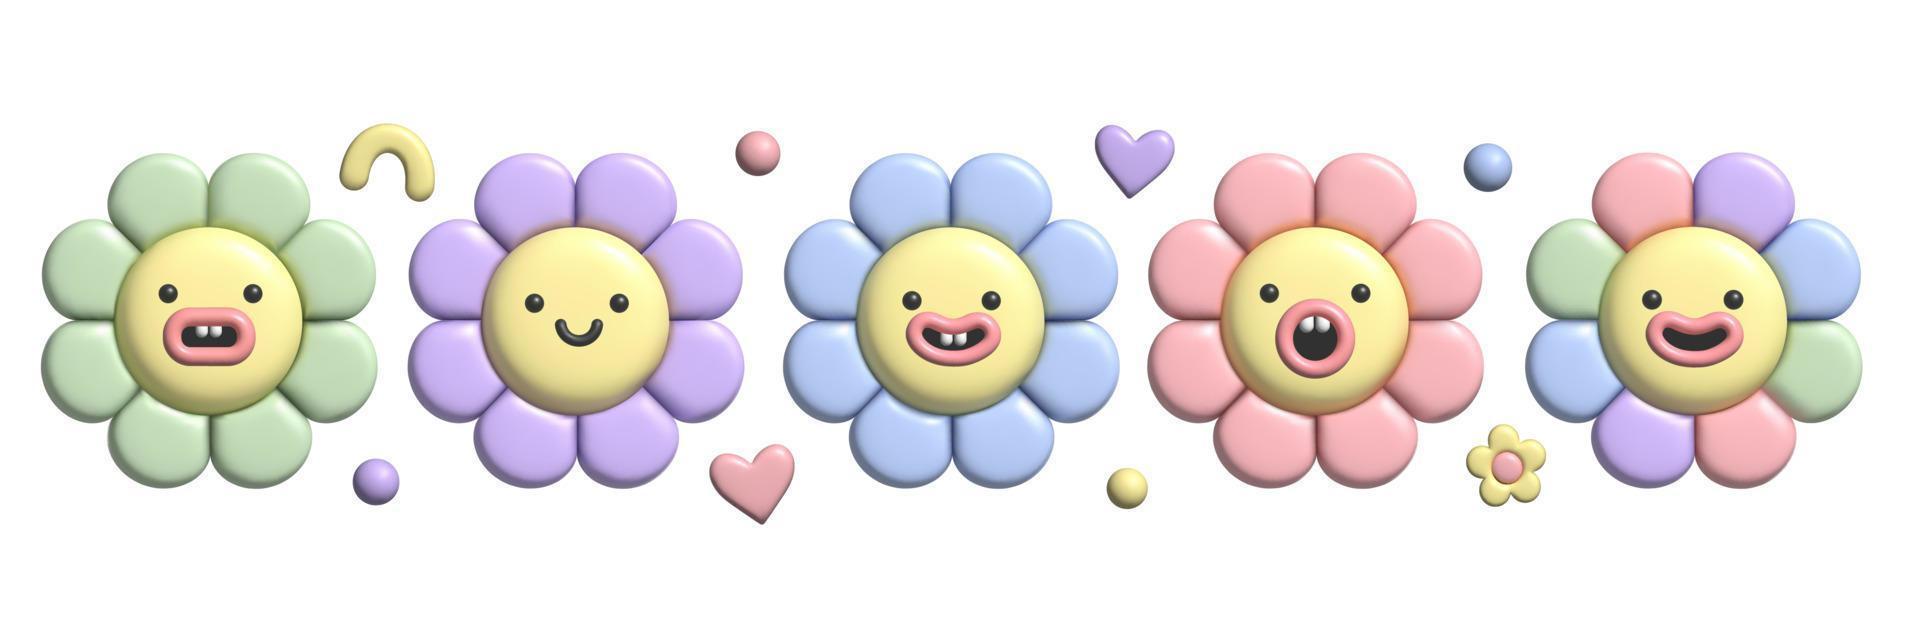 Ensemble de fleurs pastel 3d avec effet de pâte à modeler. autocollants mignons de marguerite de sourire de l'année 2000 dans le style en plastique à la mode. vecteur